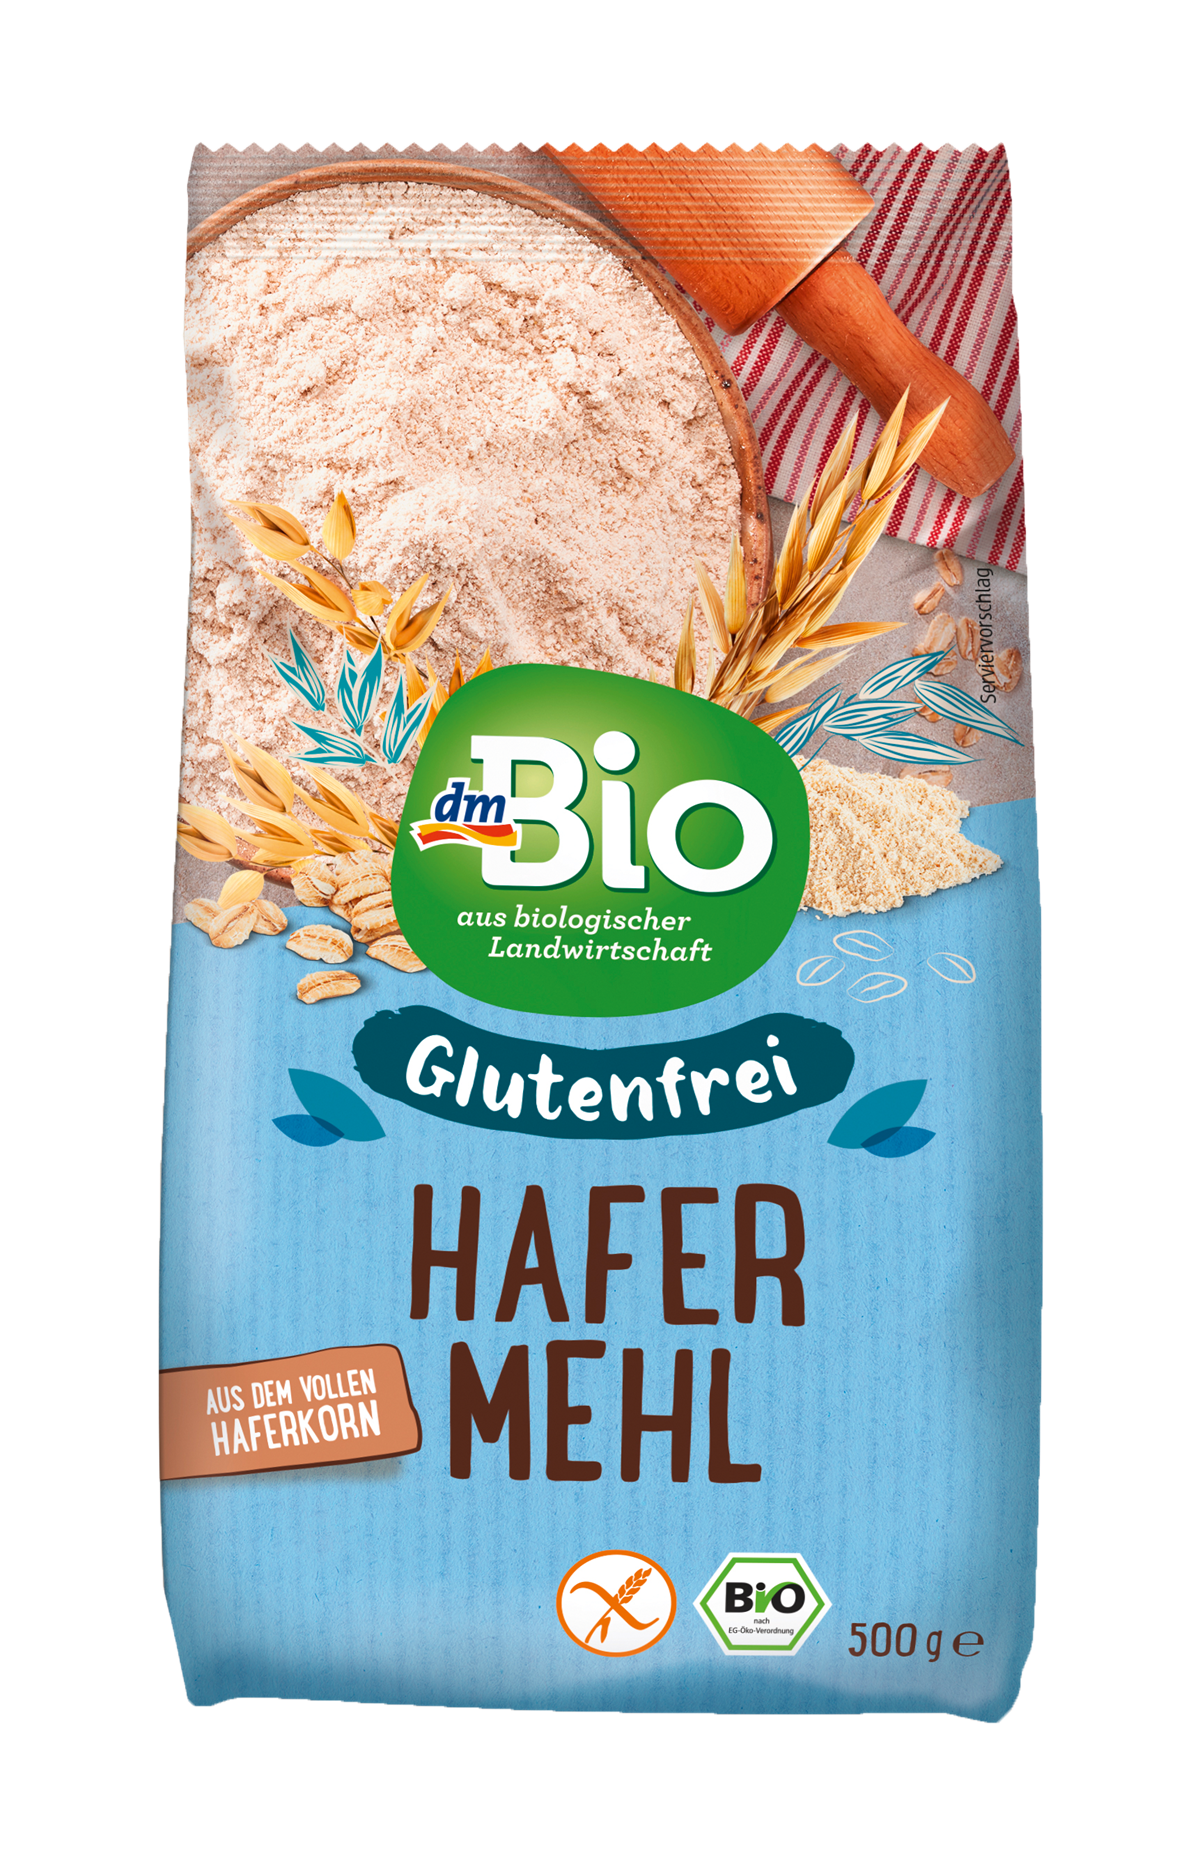 dmBio glutenfreies Hafermehl (500 g): 2,45 €